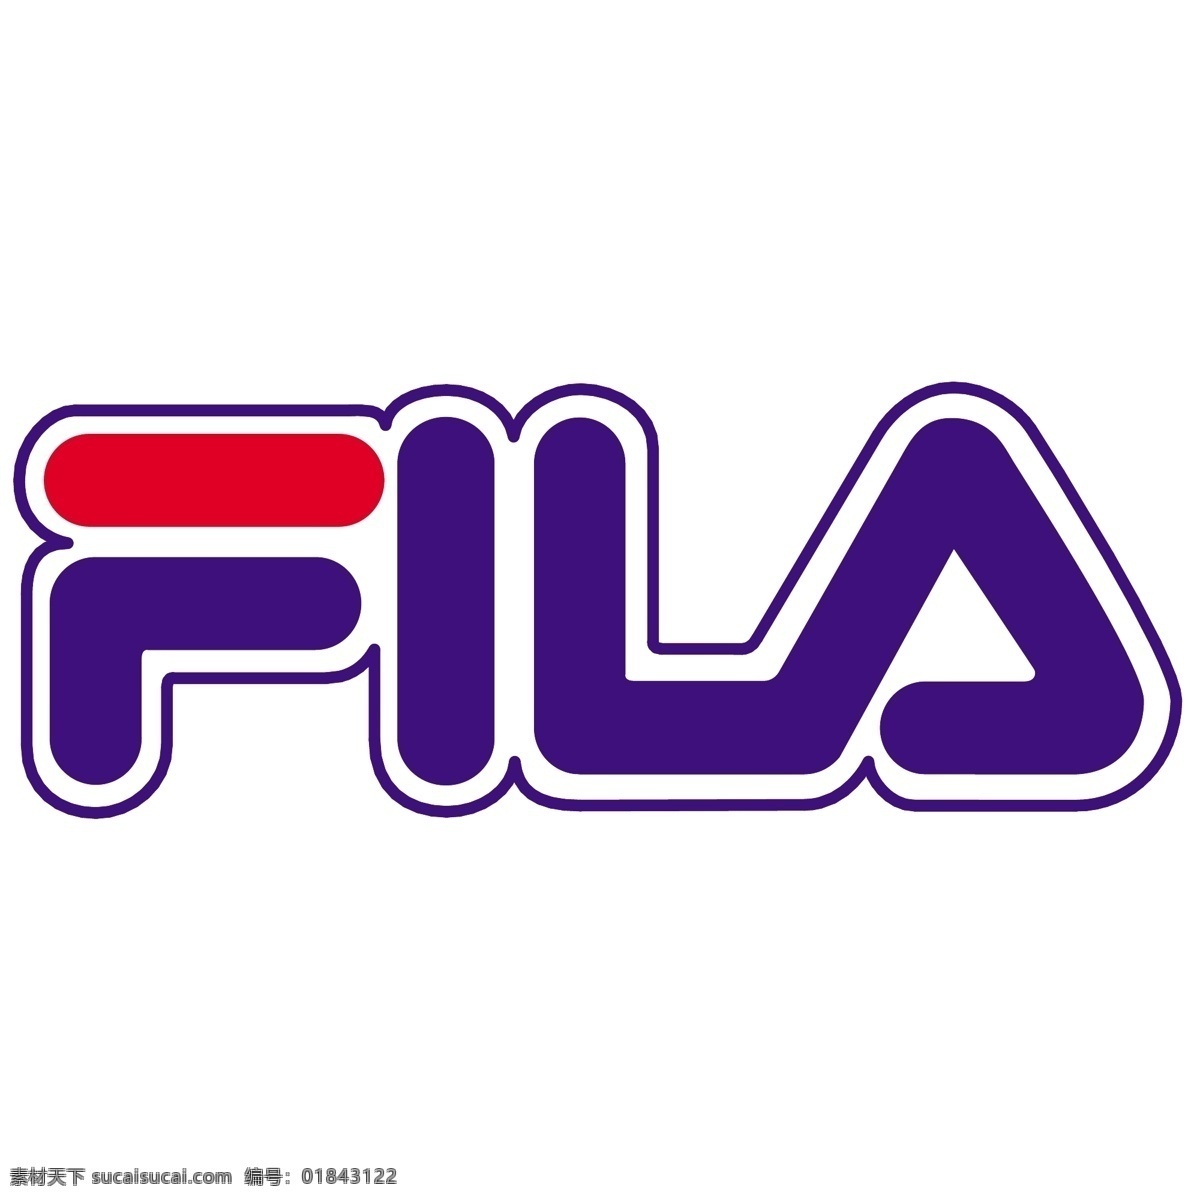 斐乐 fila 企业 标志 运动品牌 飞拉 标识标志图标 logo 矢量图库